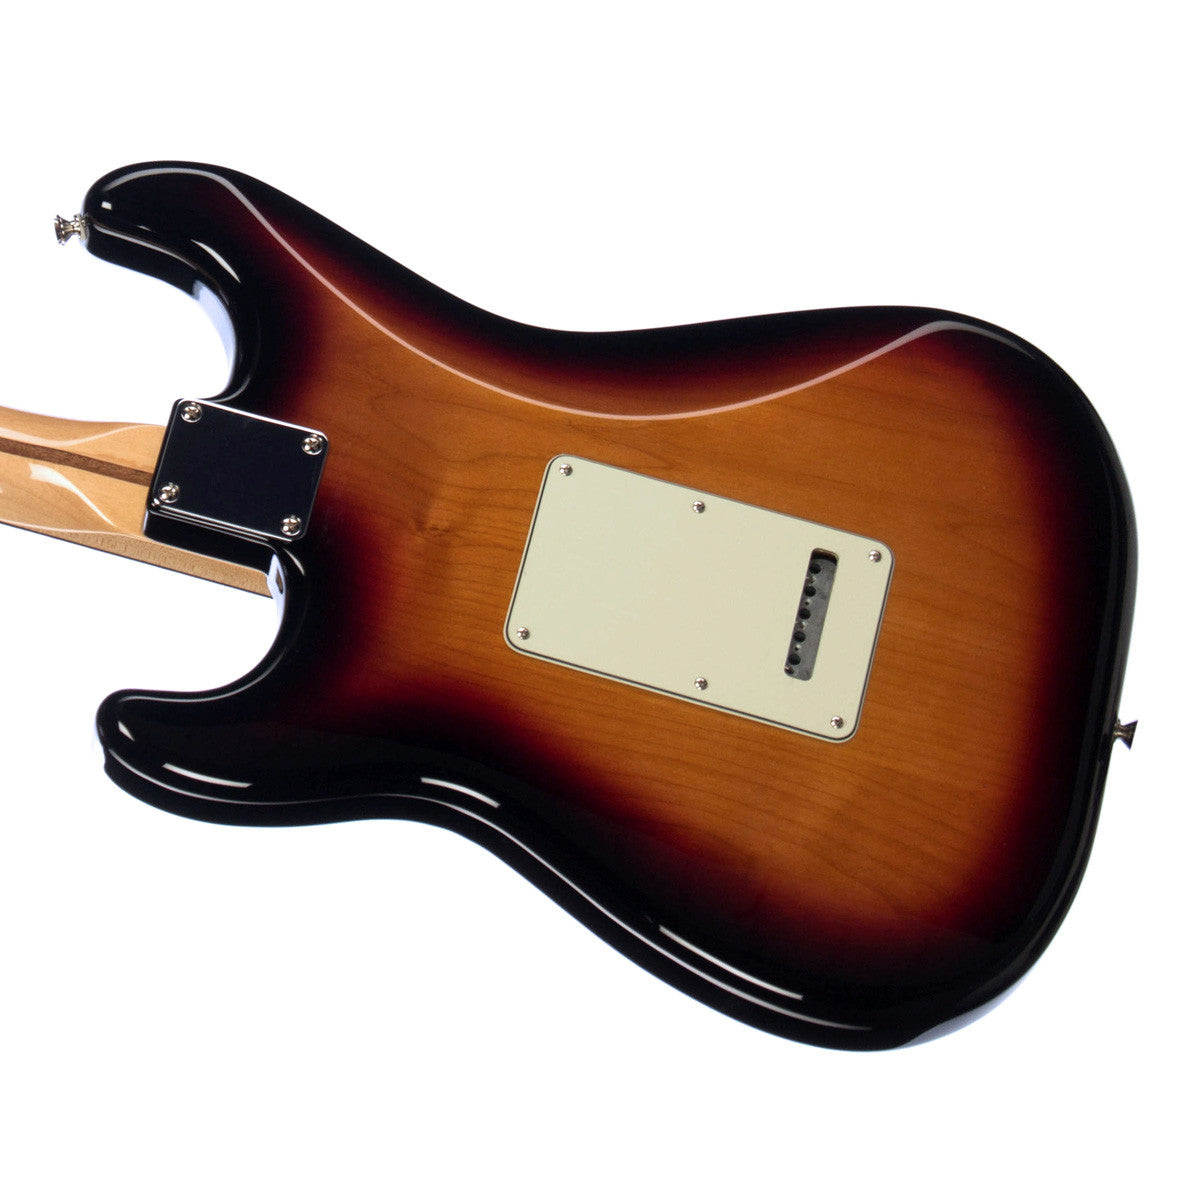 Fender Deluxe Lone Star Stratocaster - Sunburst | Make'n Music